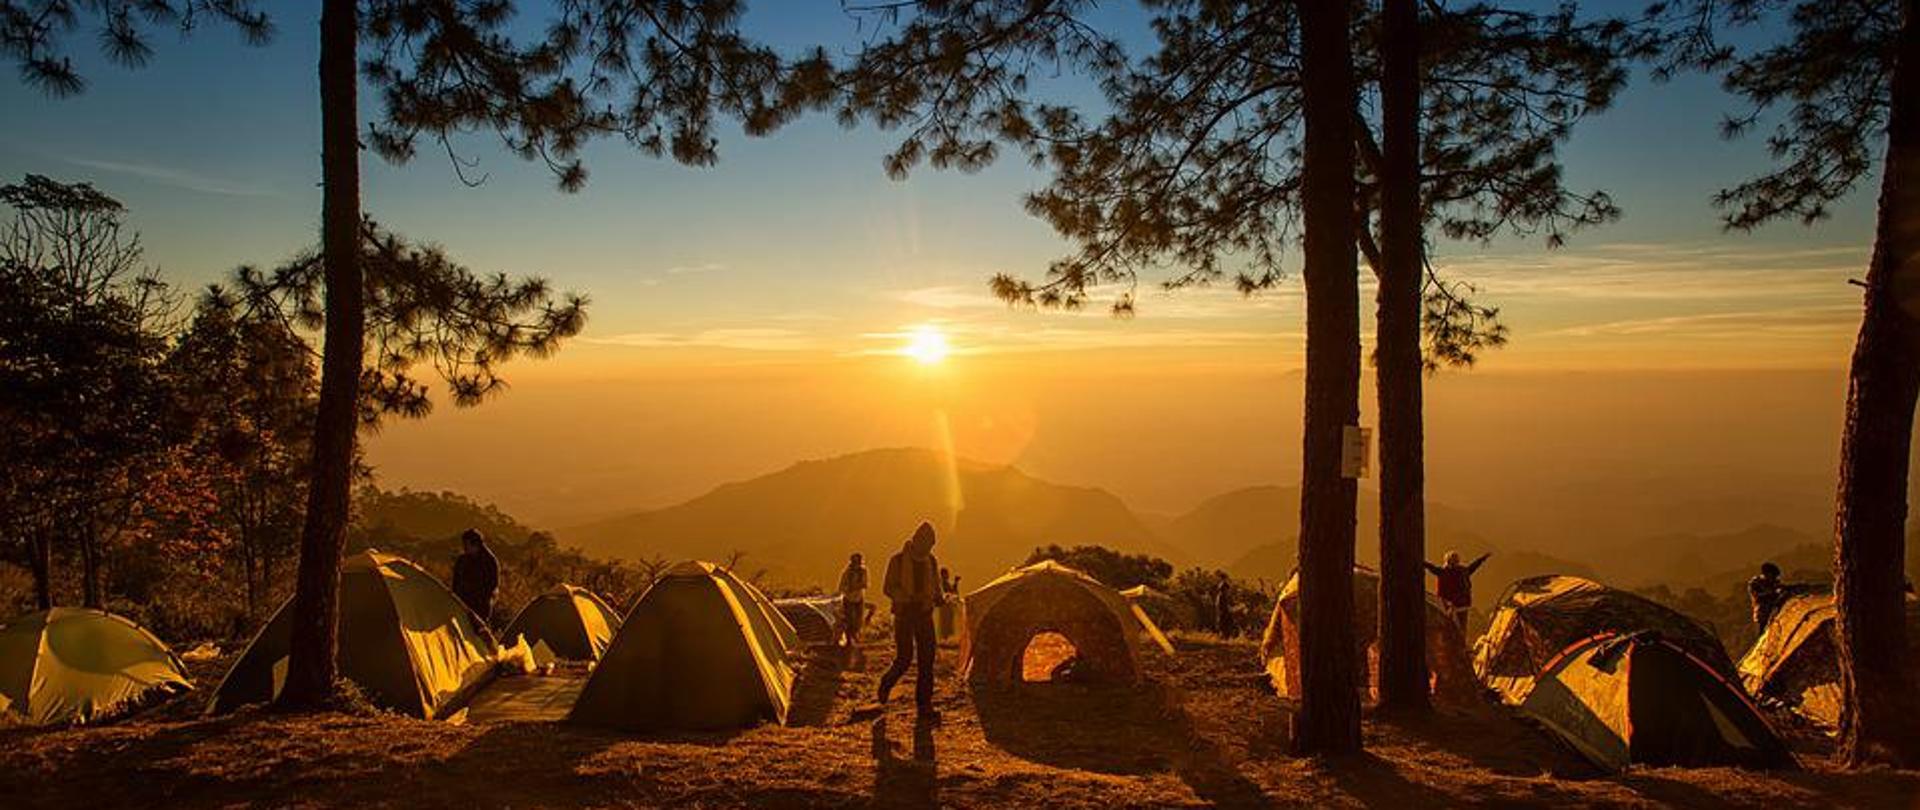 Obóz pod namiotami na tle zachodzącego słońca